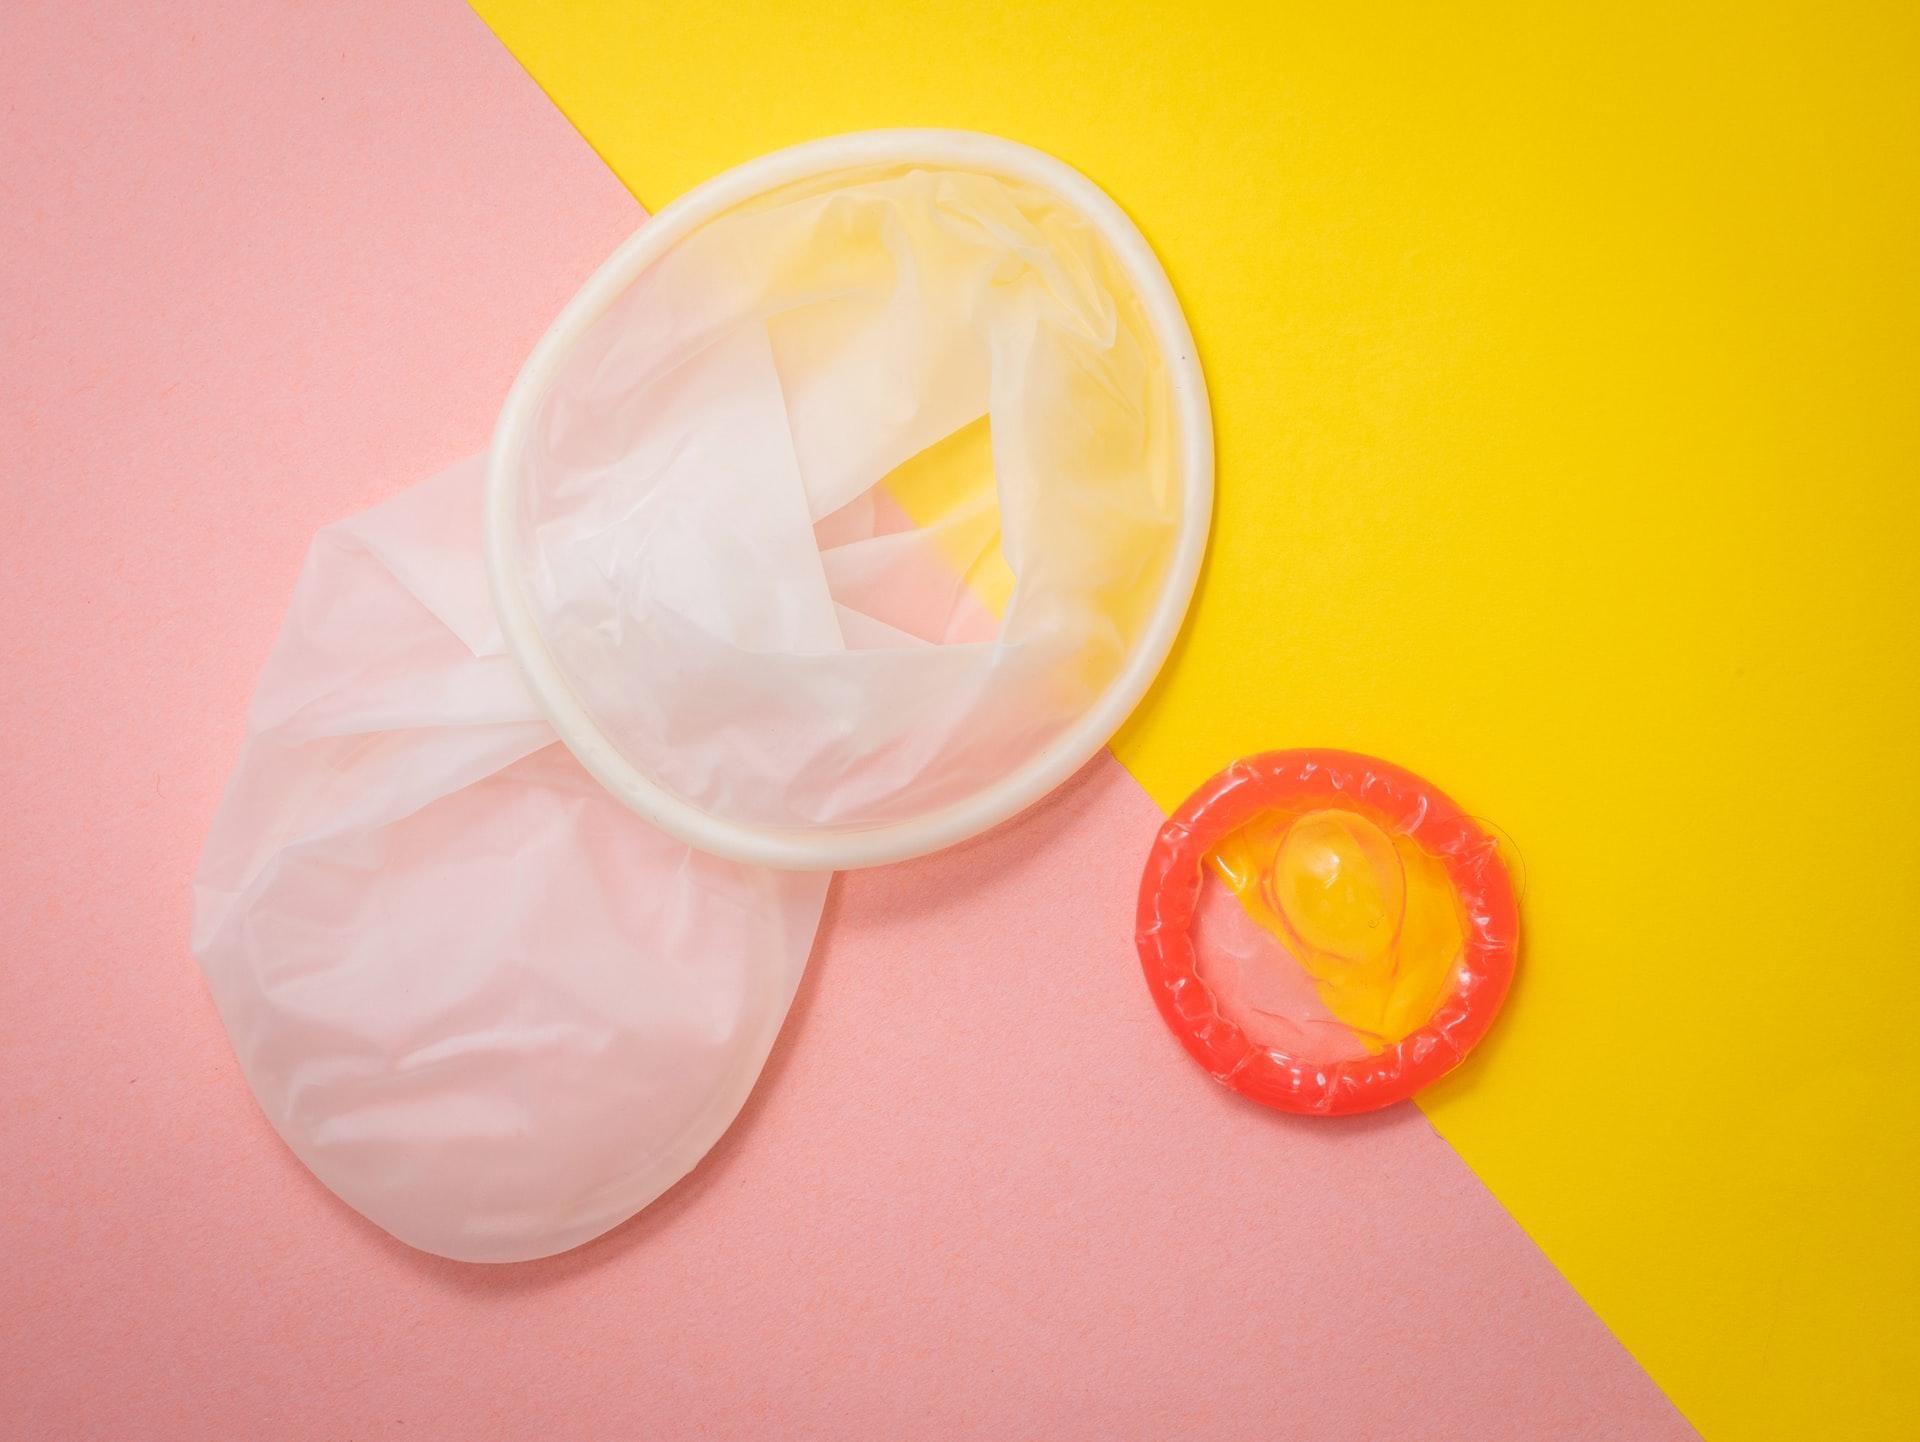 День презерватива 2021: мужские и женские презервативы – плюсы и минусы